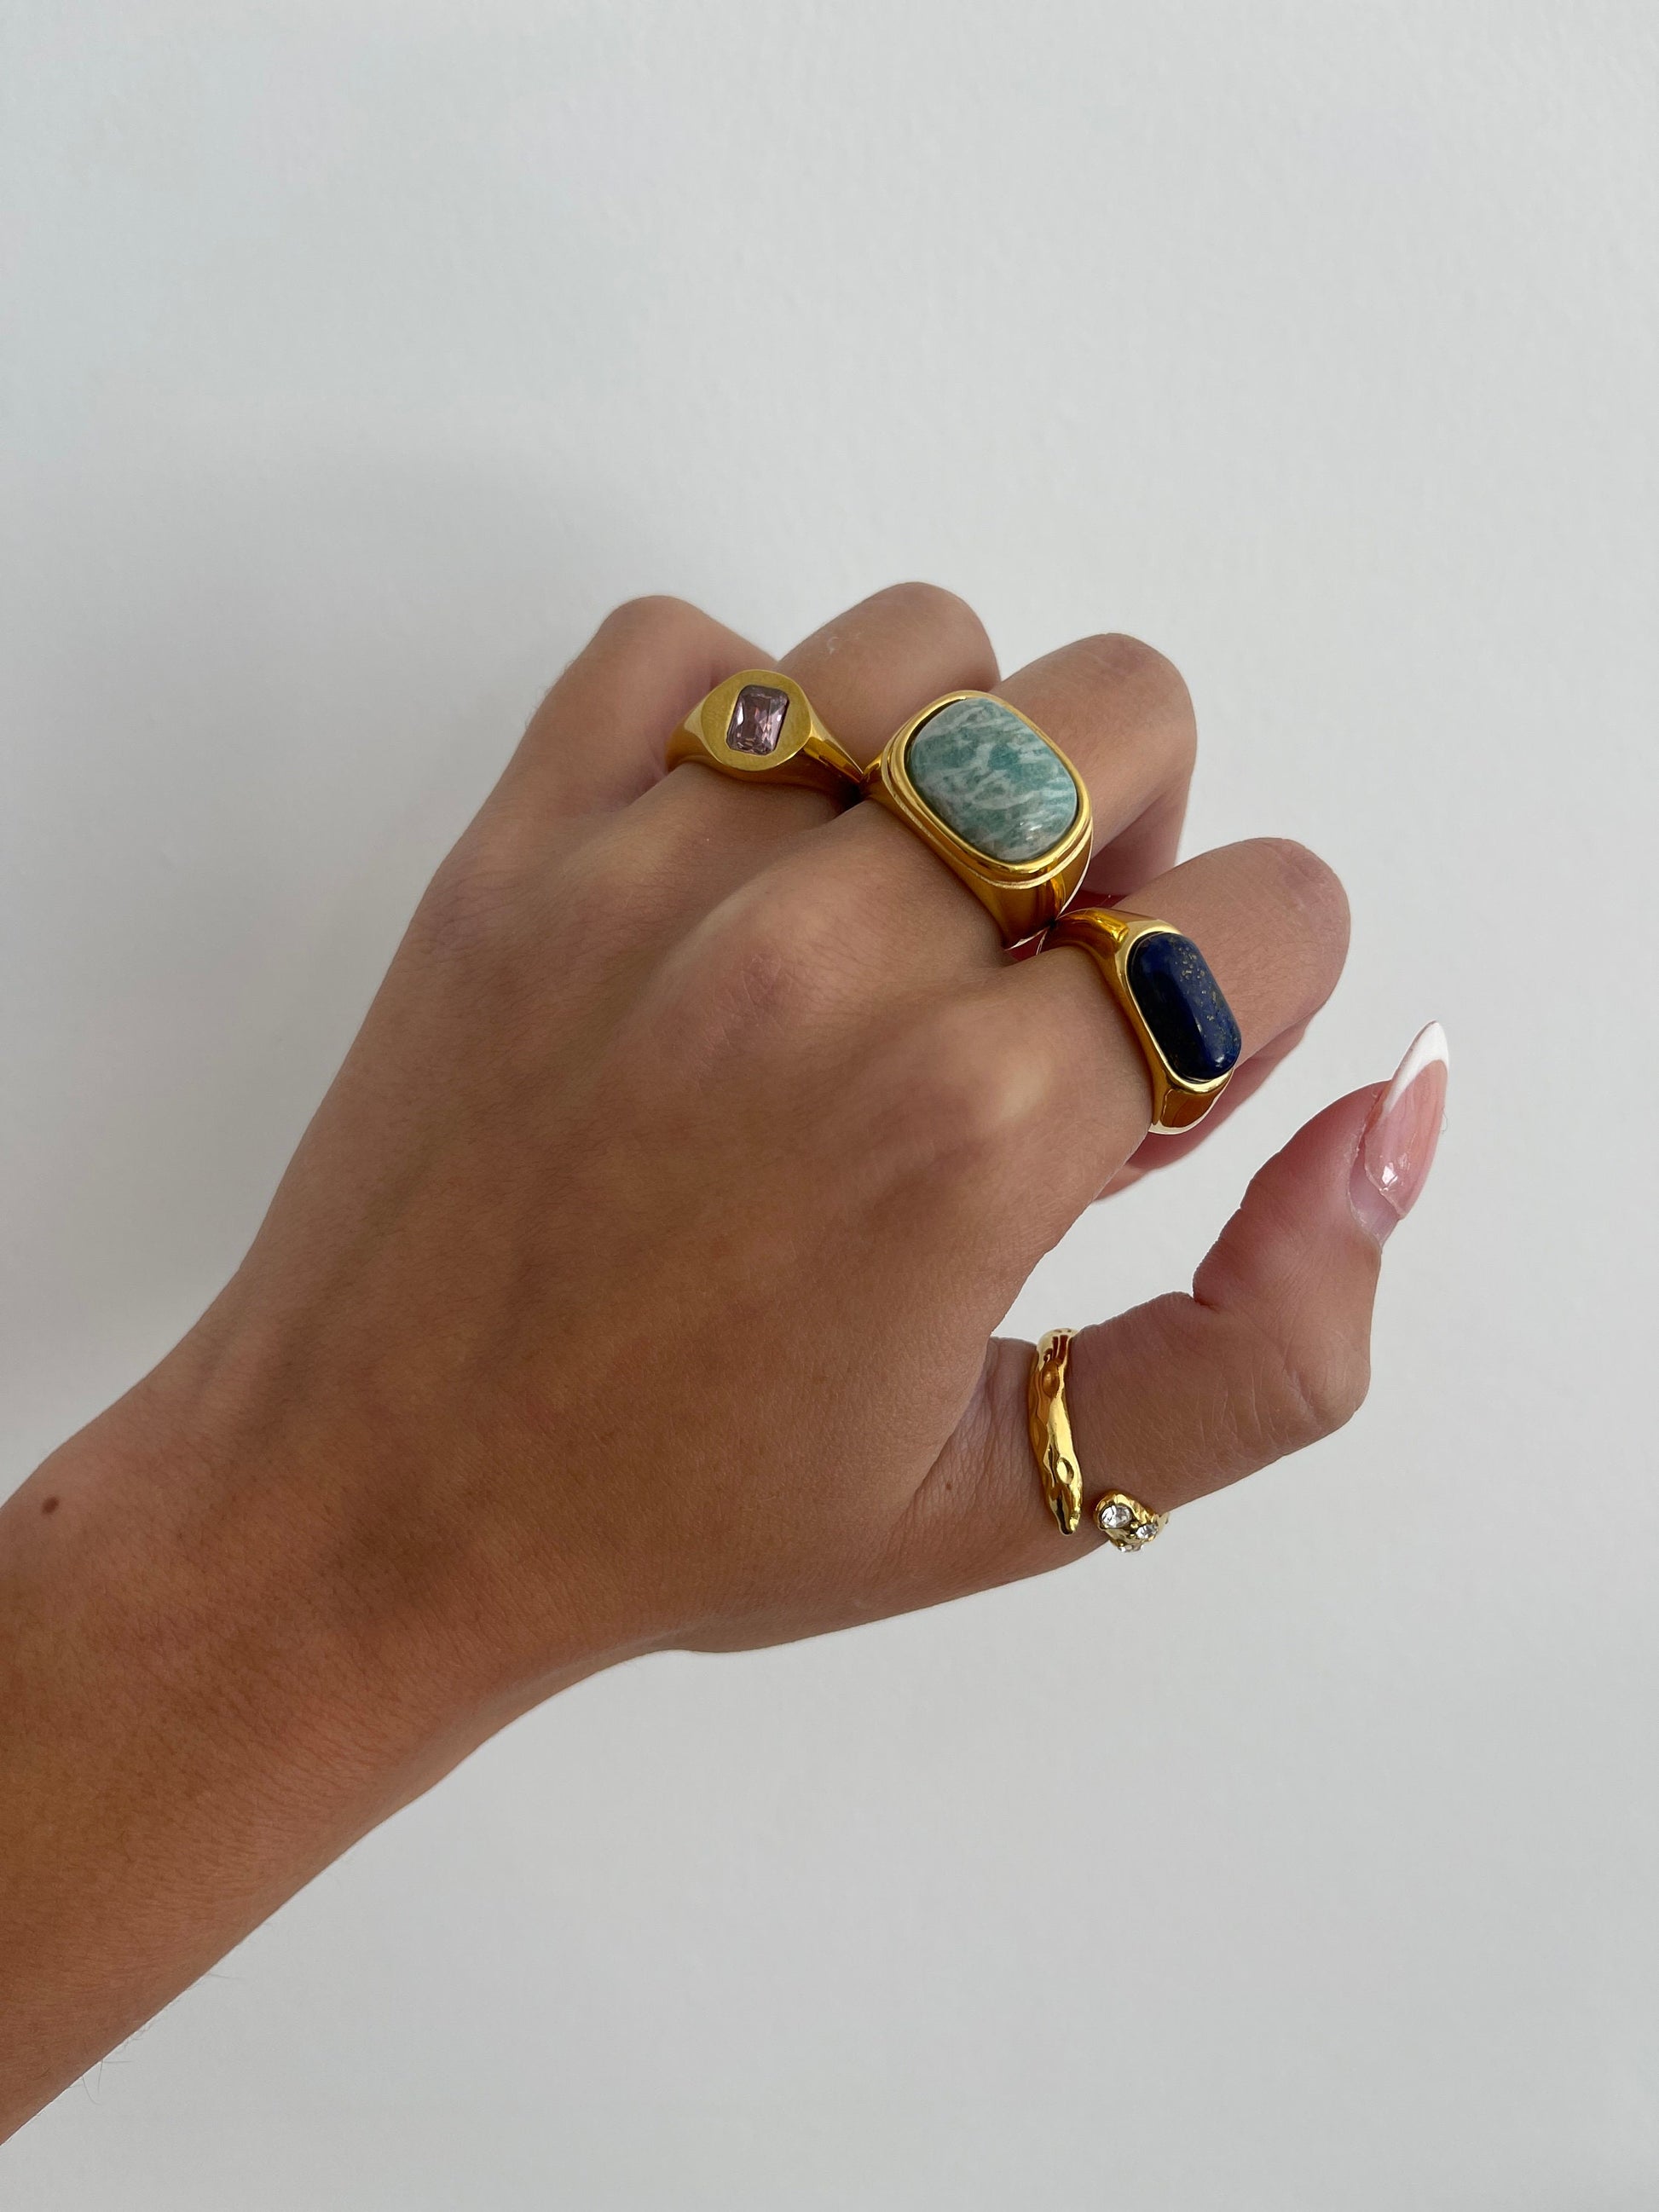 Gemstone ring, thin chunky gold ring, gold filled ring, natural gemstone ring, thick gold ring agate band, quartz, minimalist irregular ring